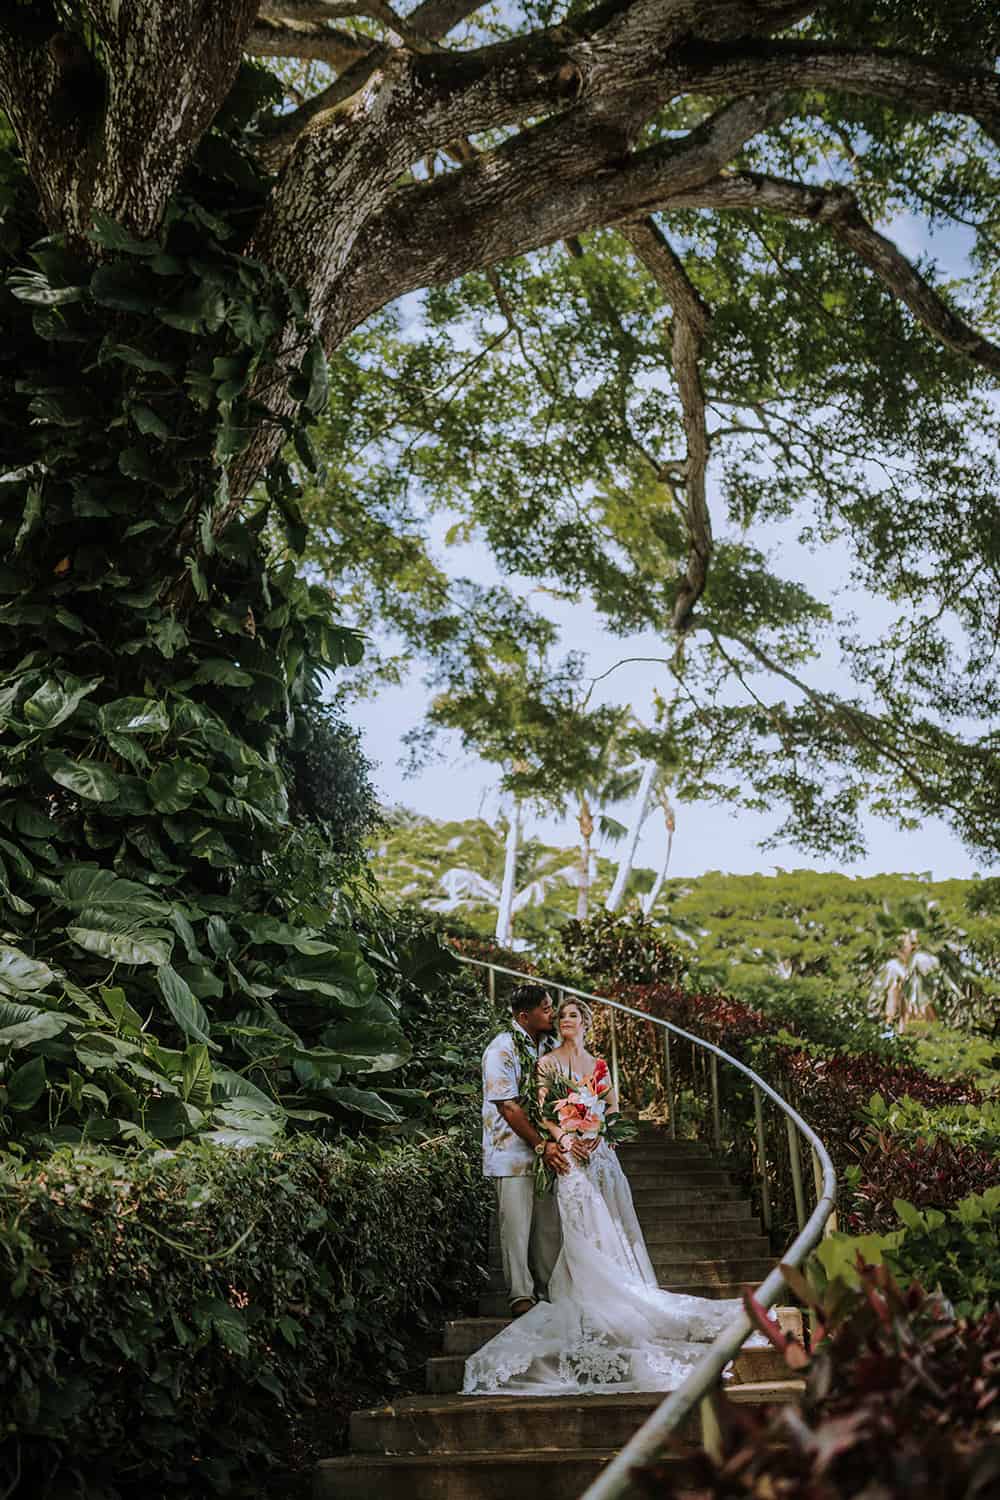 MOL'I'I GARDENS-KUALOA Oahu hawaii wedding venue